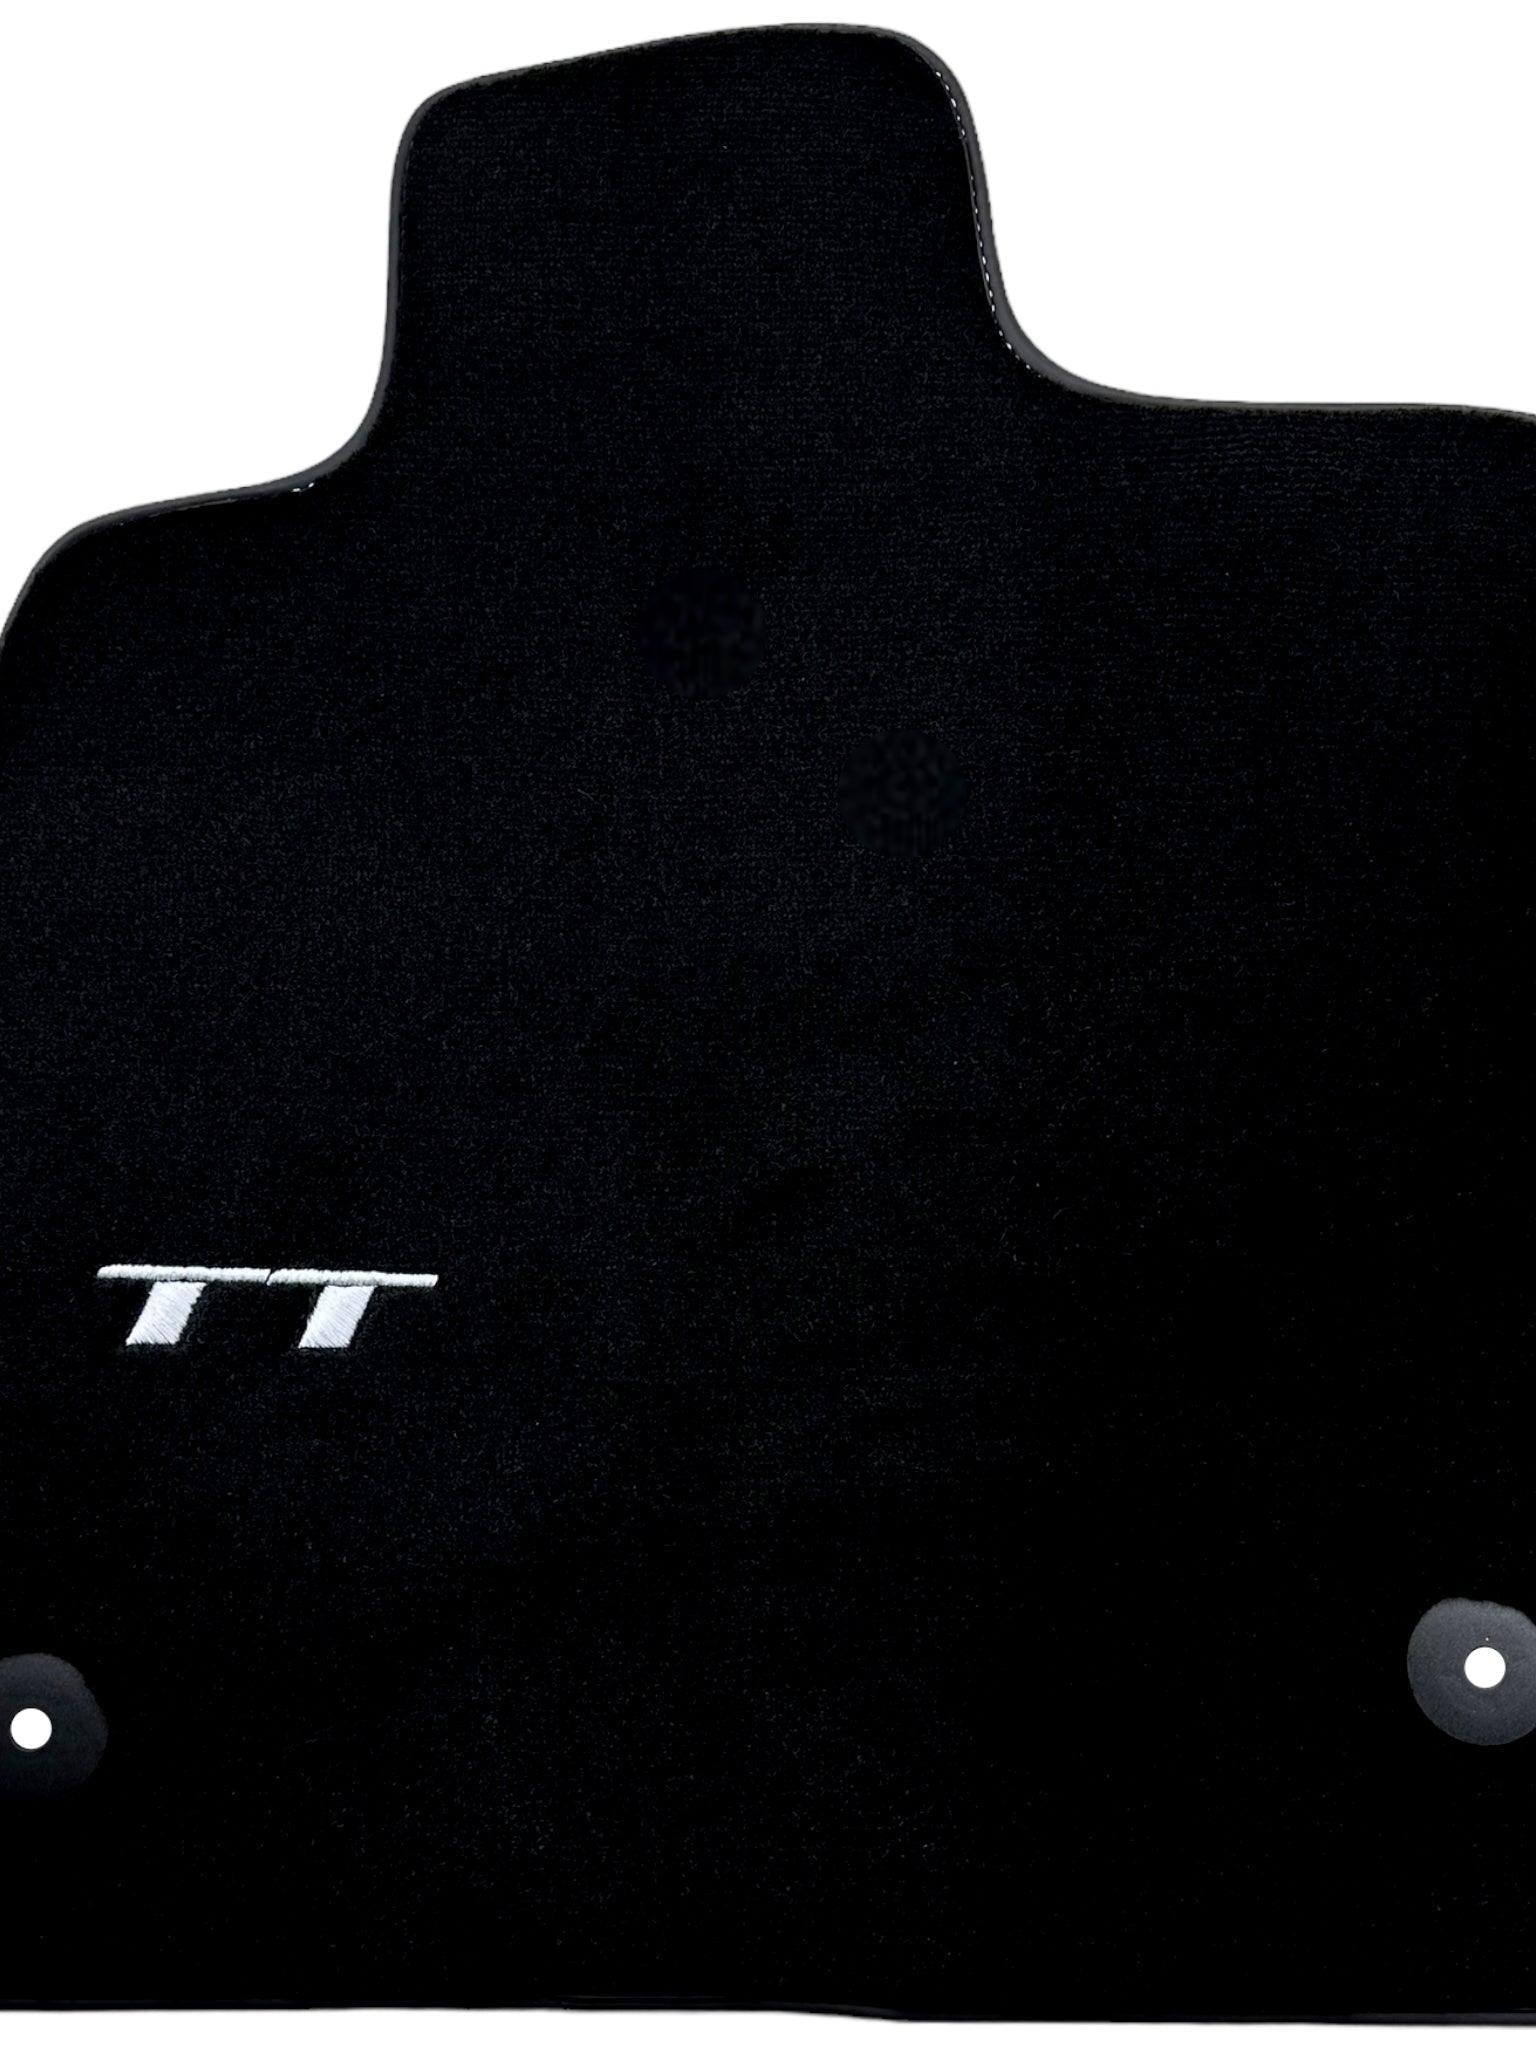 Black Floor Mats for Audi TT (2014-2024)